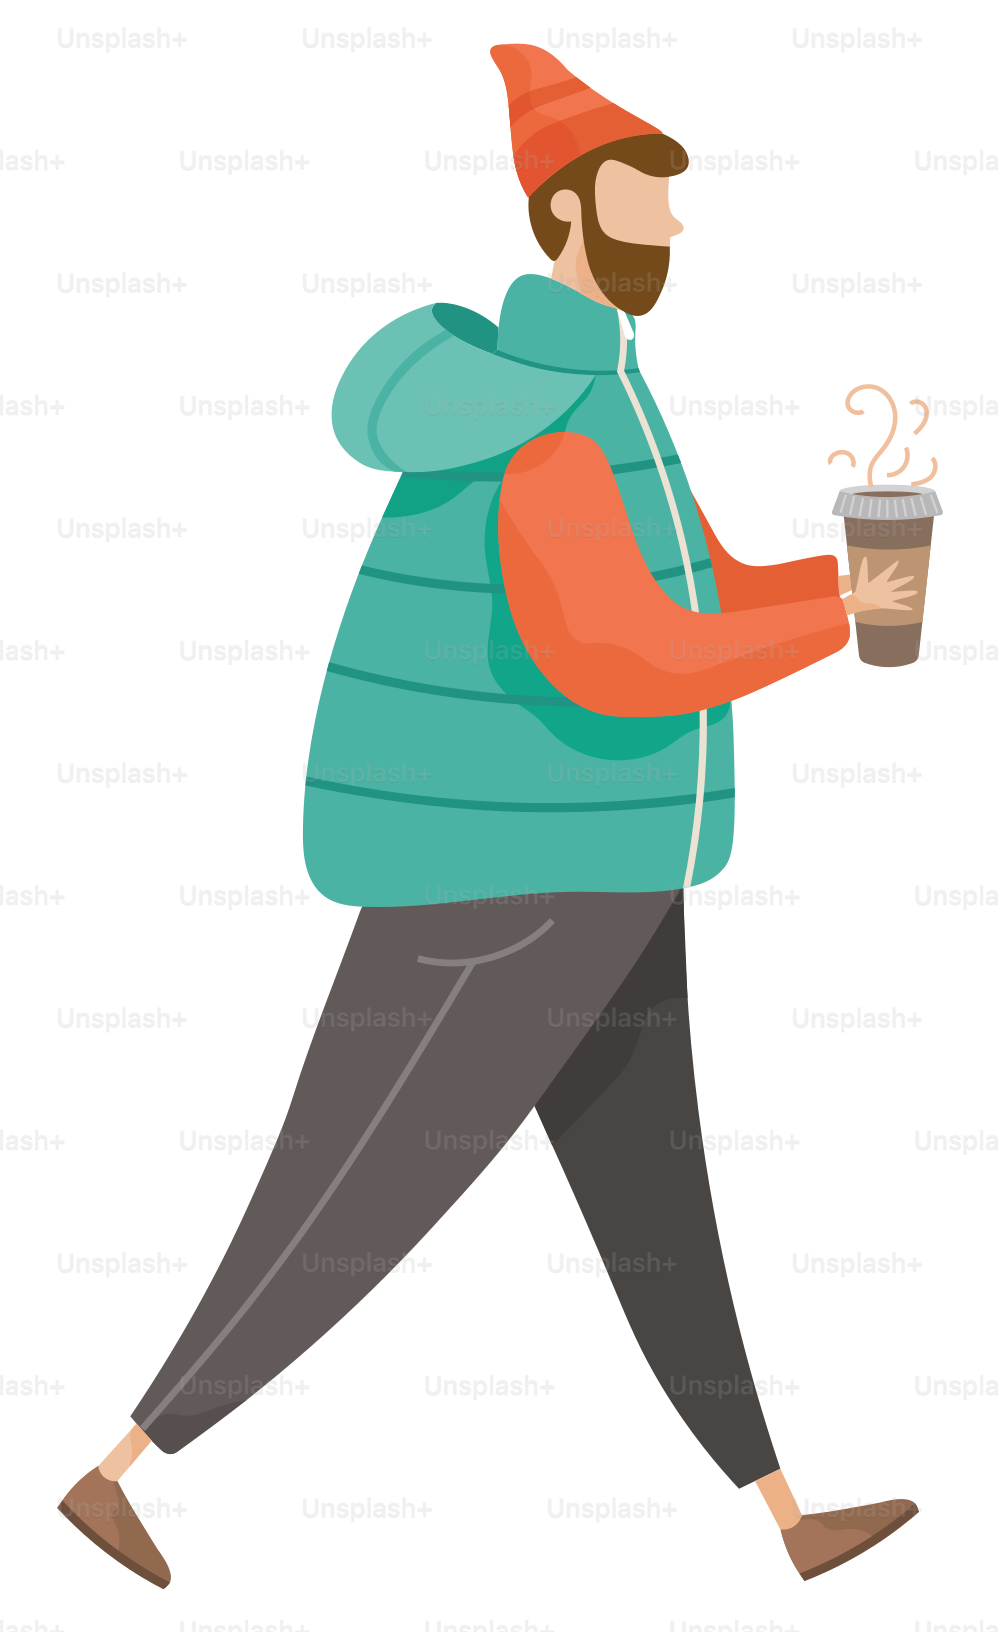 Homme marchant seul et buvant du café vectoriel. Hipster avec cappuccino, latte ou expresso dans l’illustration des mains. Guy tenant une tasse avec une boisson chaude. Personne dans des vêtements chauds comme un chapeau et une veste, style plat